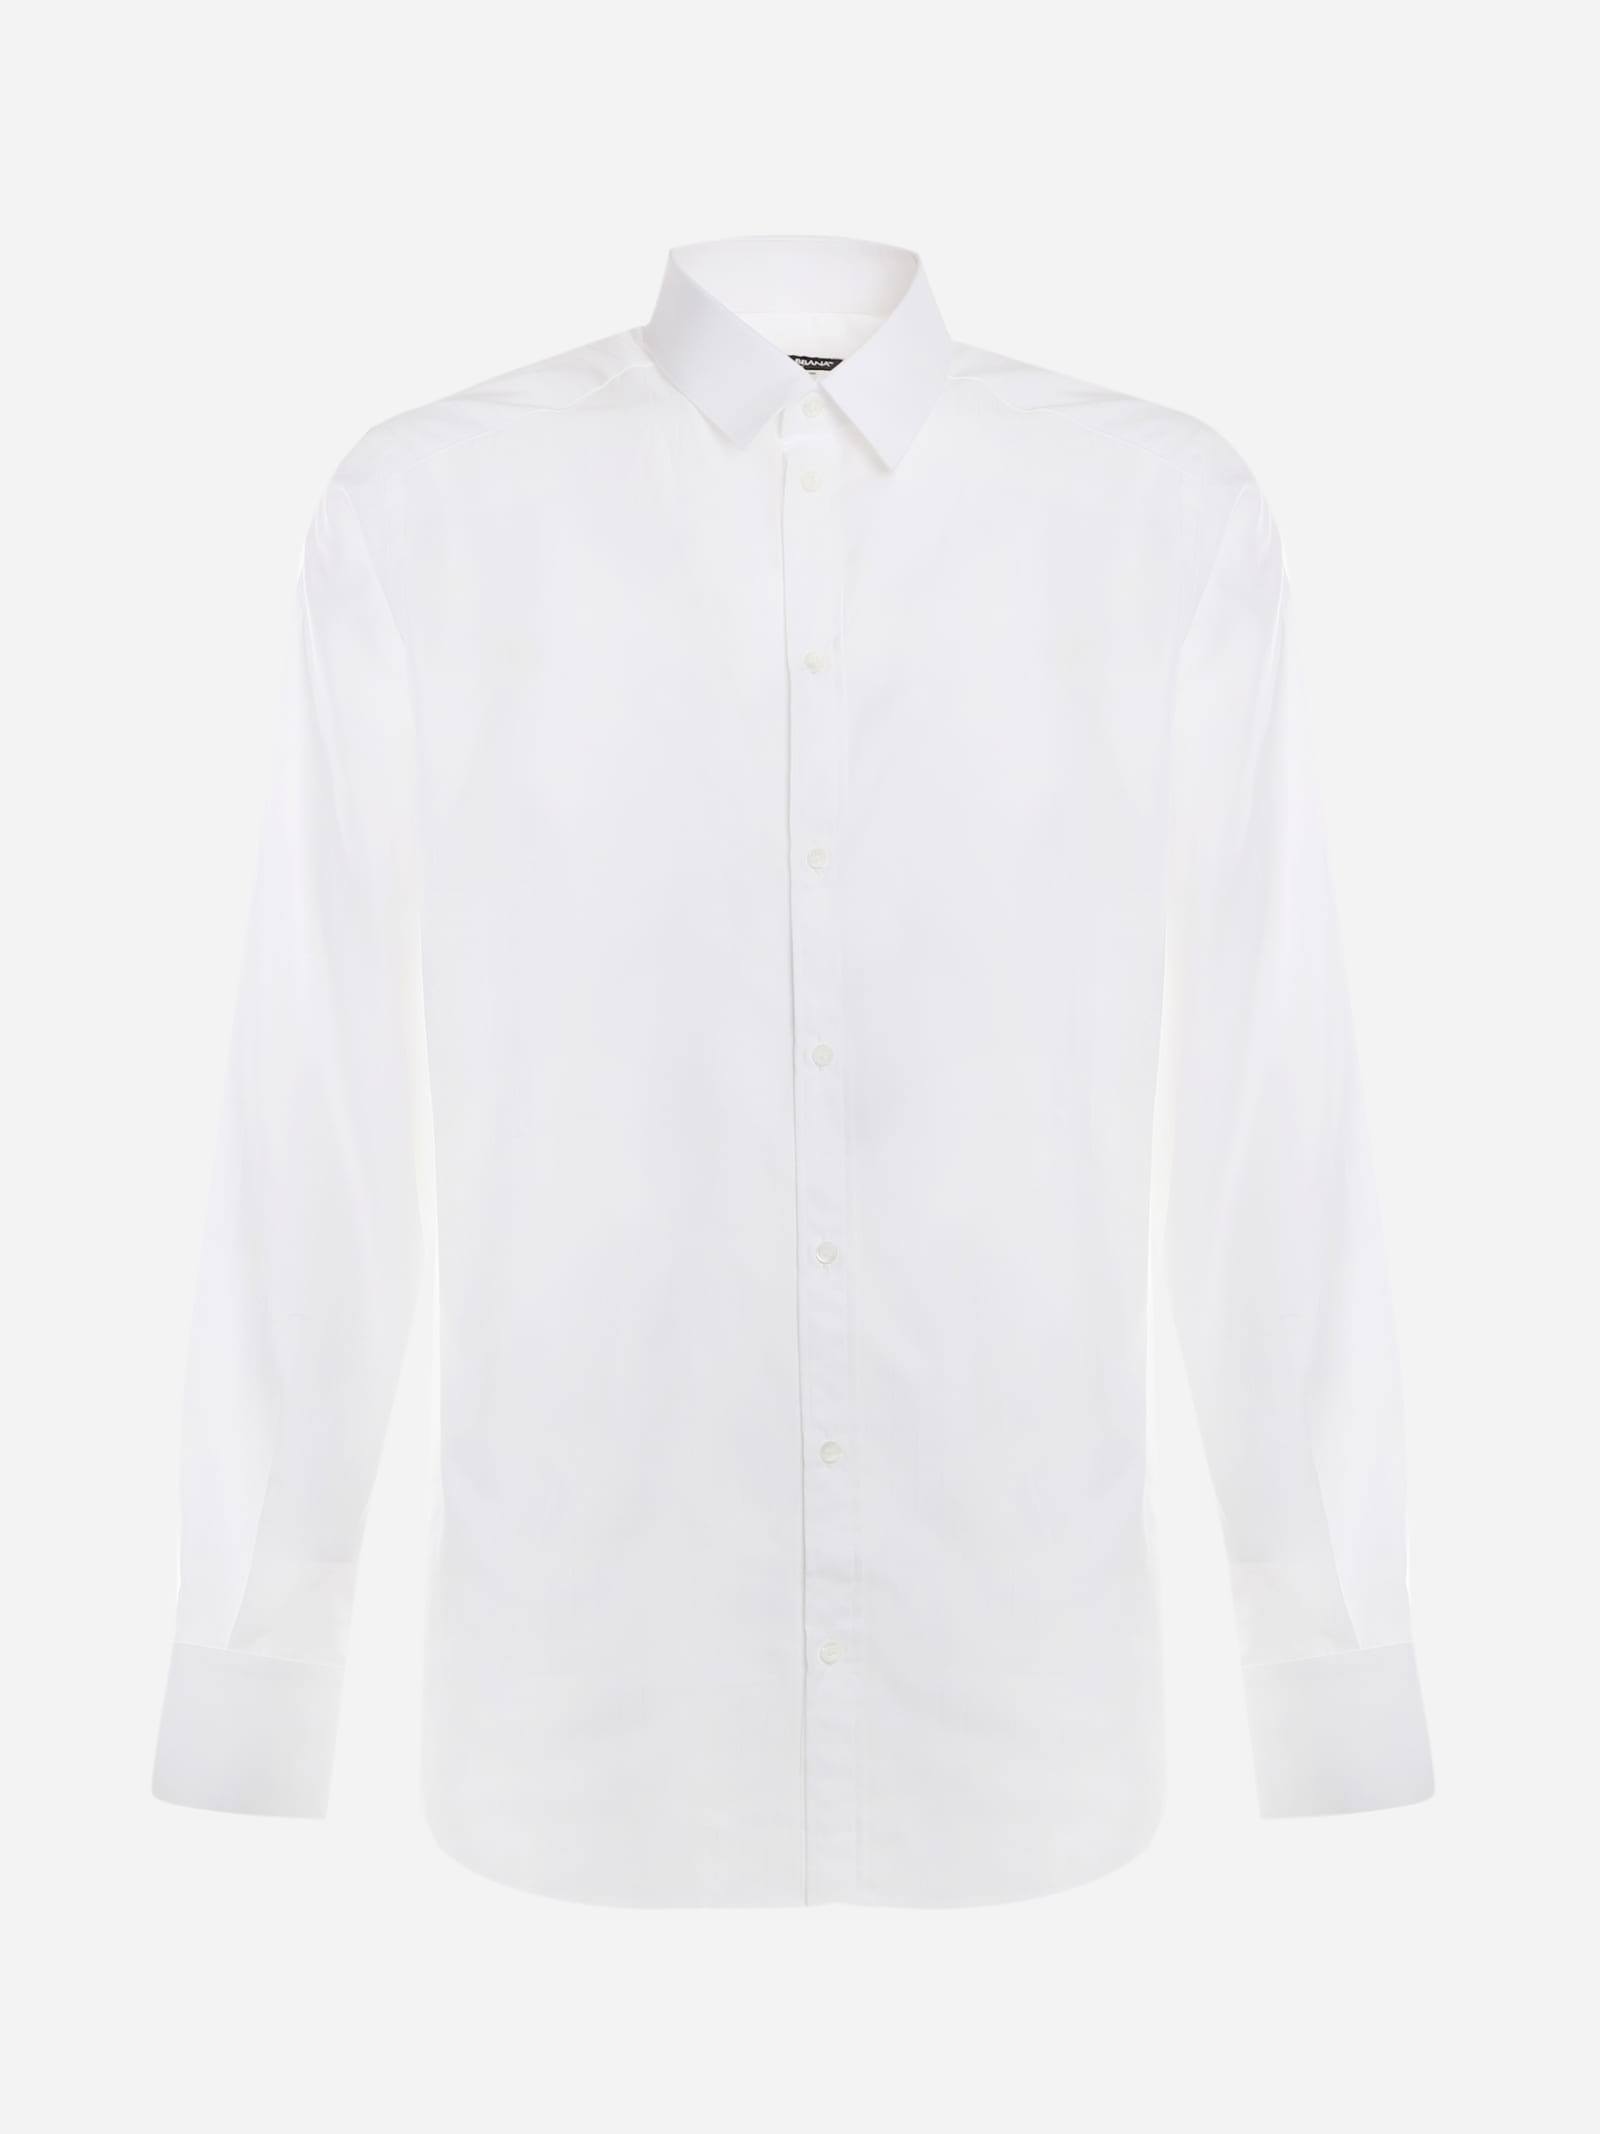 Dolce & Gabbana Basic Shirt Made Of Cotton